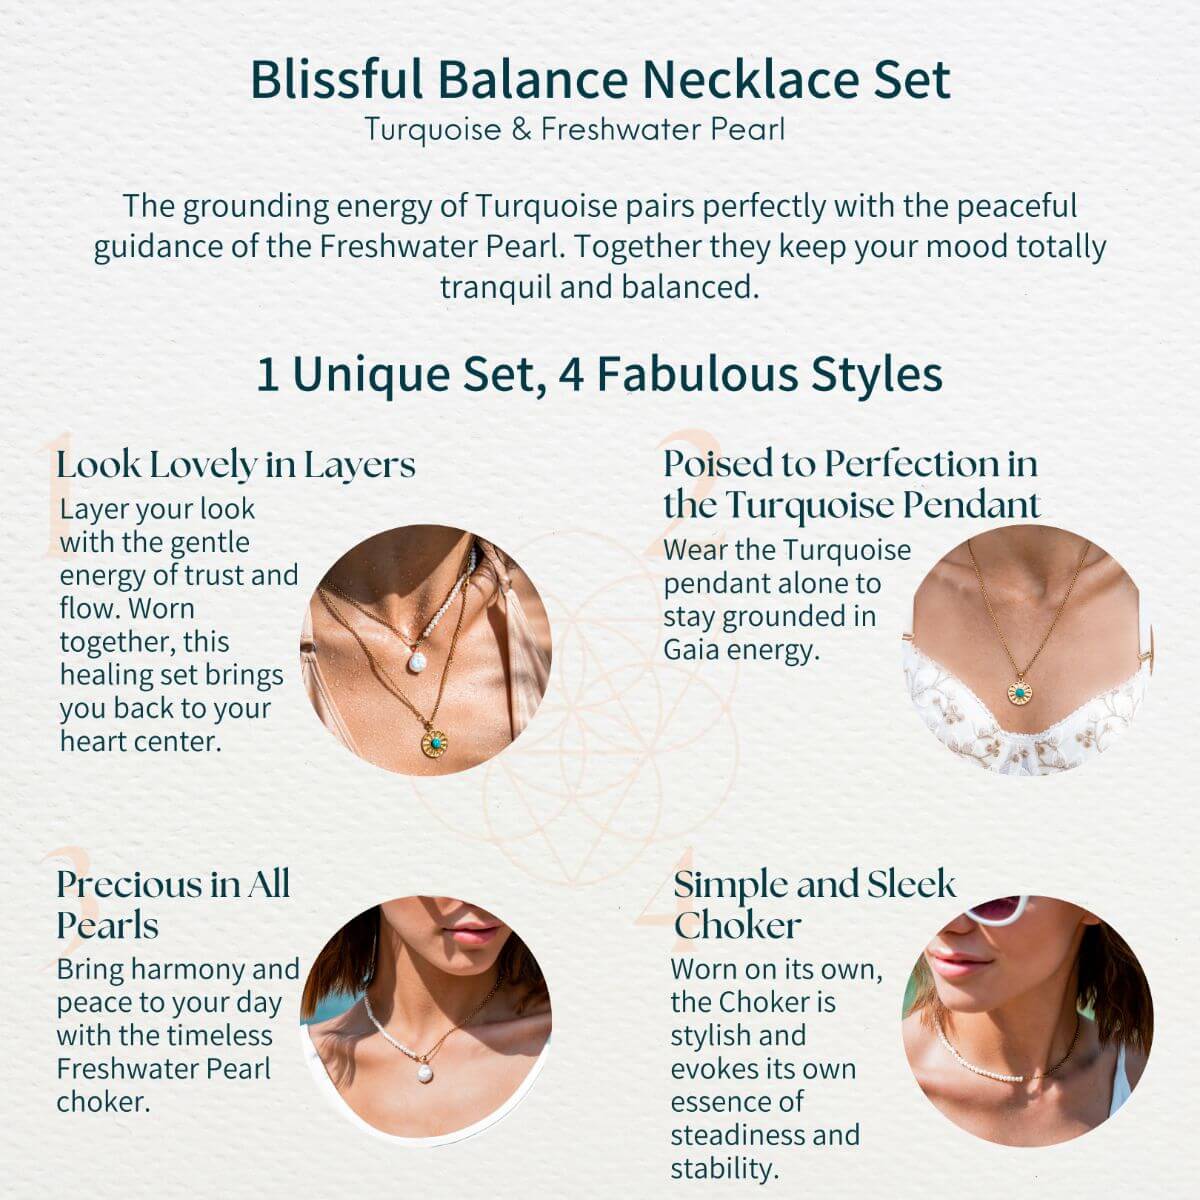 Blissful Balance Necklace Set﻿